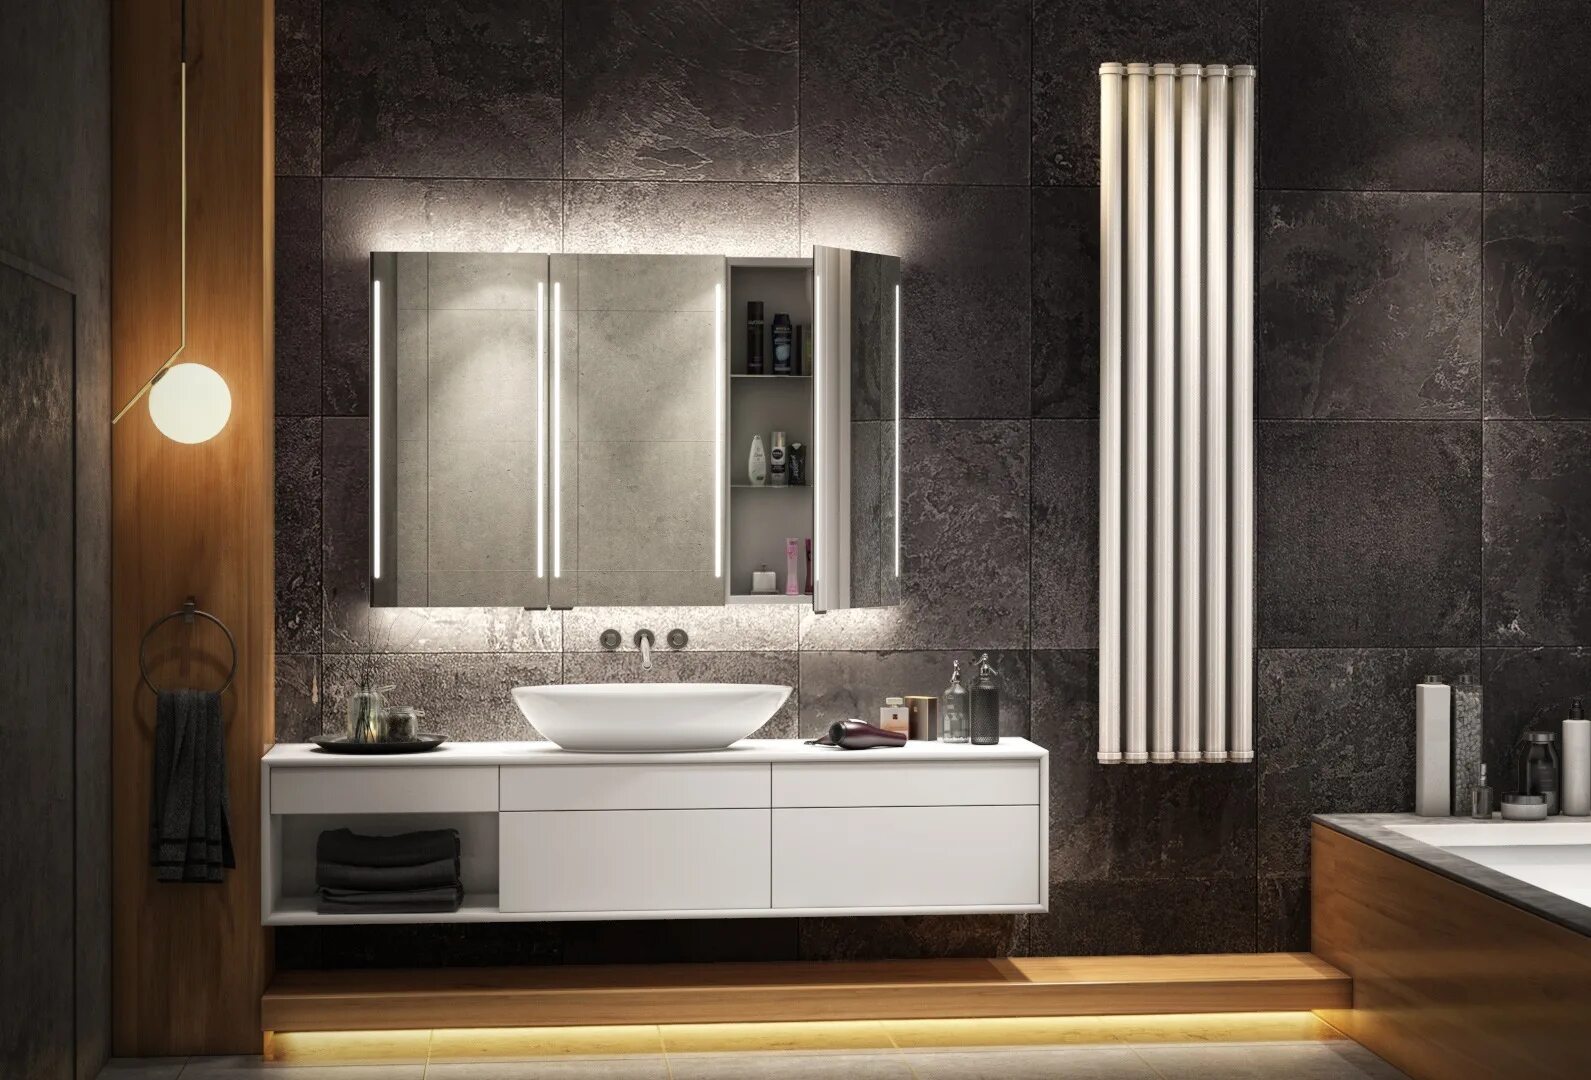 Зеркало официального сайта. Bathroom Mirror Cabinet. Зеркало awe some. Luxurious Bathroom Mirror and Cabinets. Миррор Регале фото.